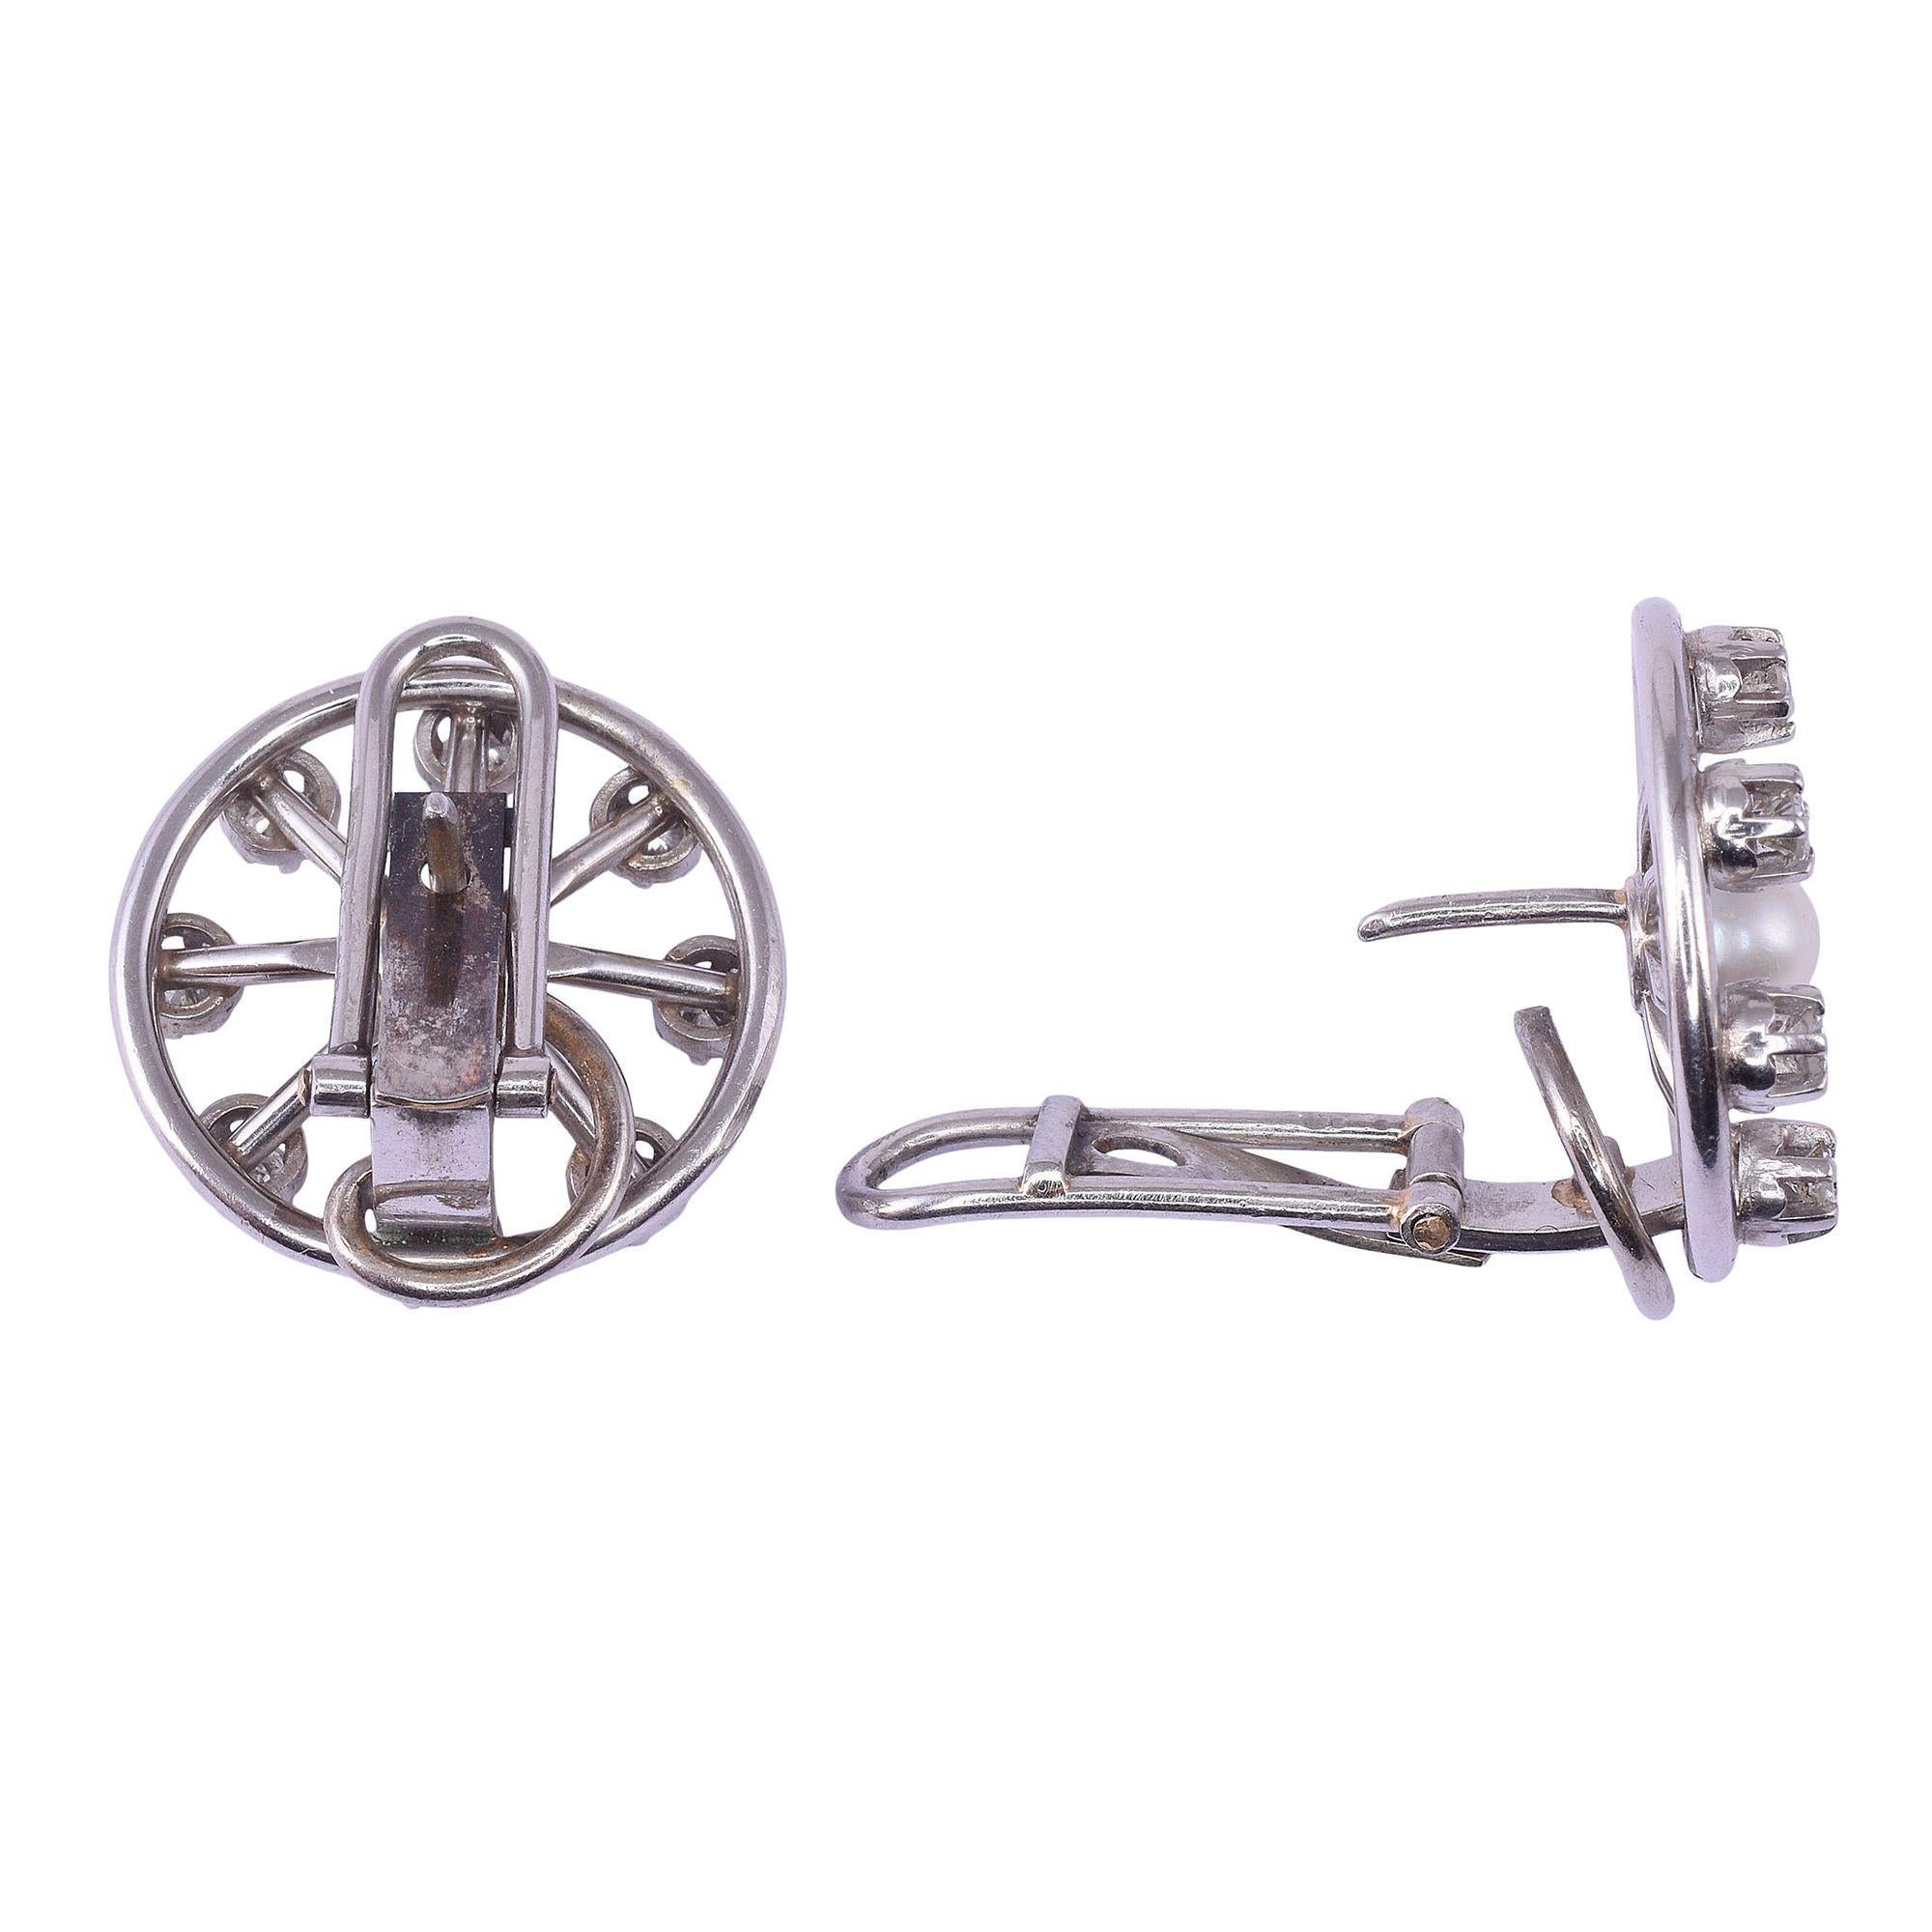 Vintage-Ohrringe aus Platin mit Perlen und Diamanten im Speichen-Design, um 1950. Diese runden Ohrringe sind aus Platin gefertigt und haben ein Speichen-Design mit einer 5,0 mm großen Perle in der Mitte und Diamanten von 0,88 Karat Gesamtgewicht an